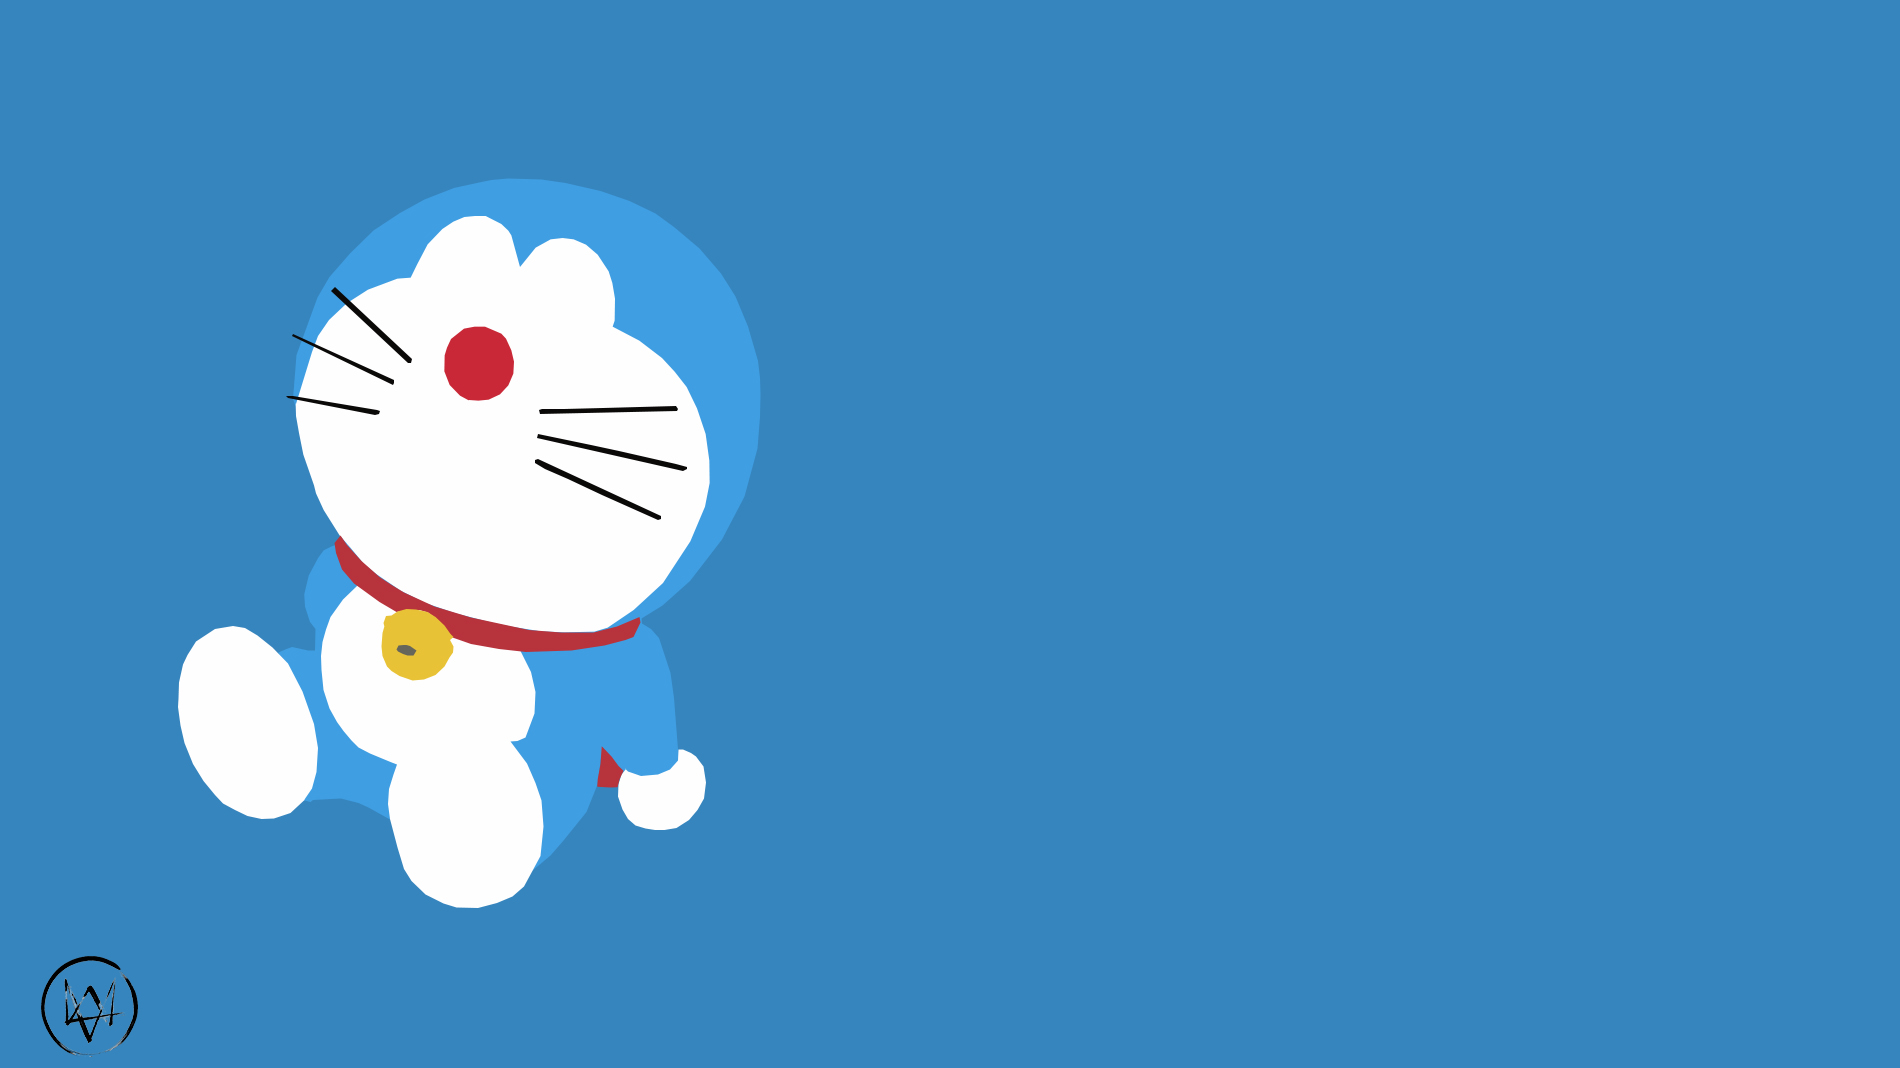 Doraemon Background